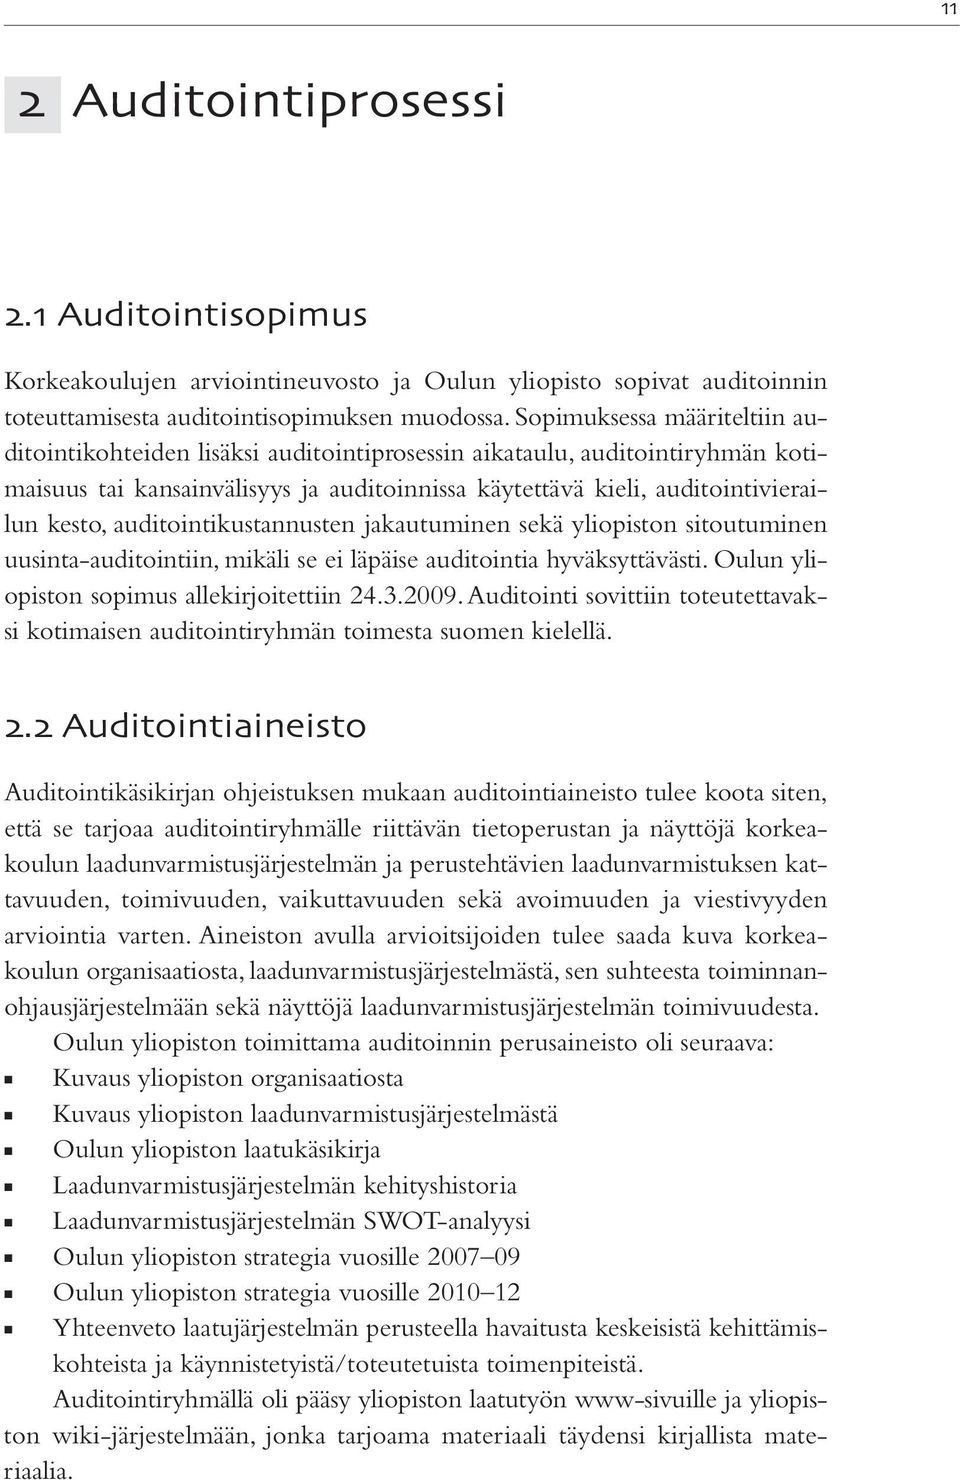 auditointikustannusten jakautuminen sekä yliopiston sitoutuminen uusinta-auditointiin, mikäli se ei läpäise auditointia hyväksyttävästi. Oulun yliopiston sopimus allekirjoitettiin 24.3.2009.